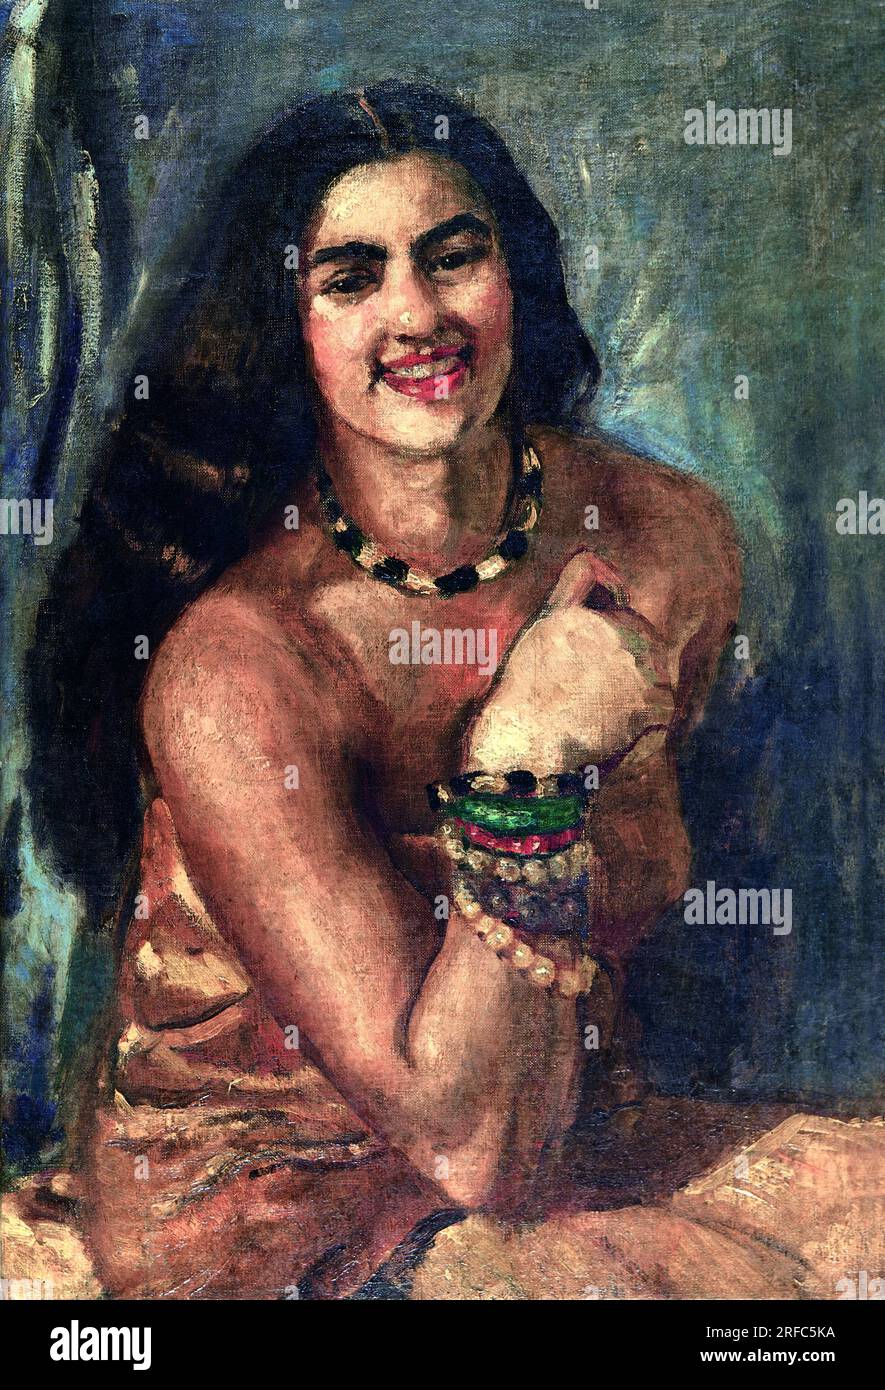 Autoportrait (7) de l'artiste hongroise-indienne Amrita Sher-Gil (1913-1941), huile sur toile, 1930 Banque D'Images